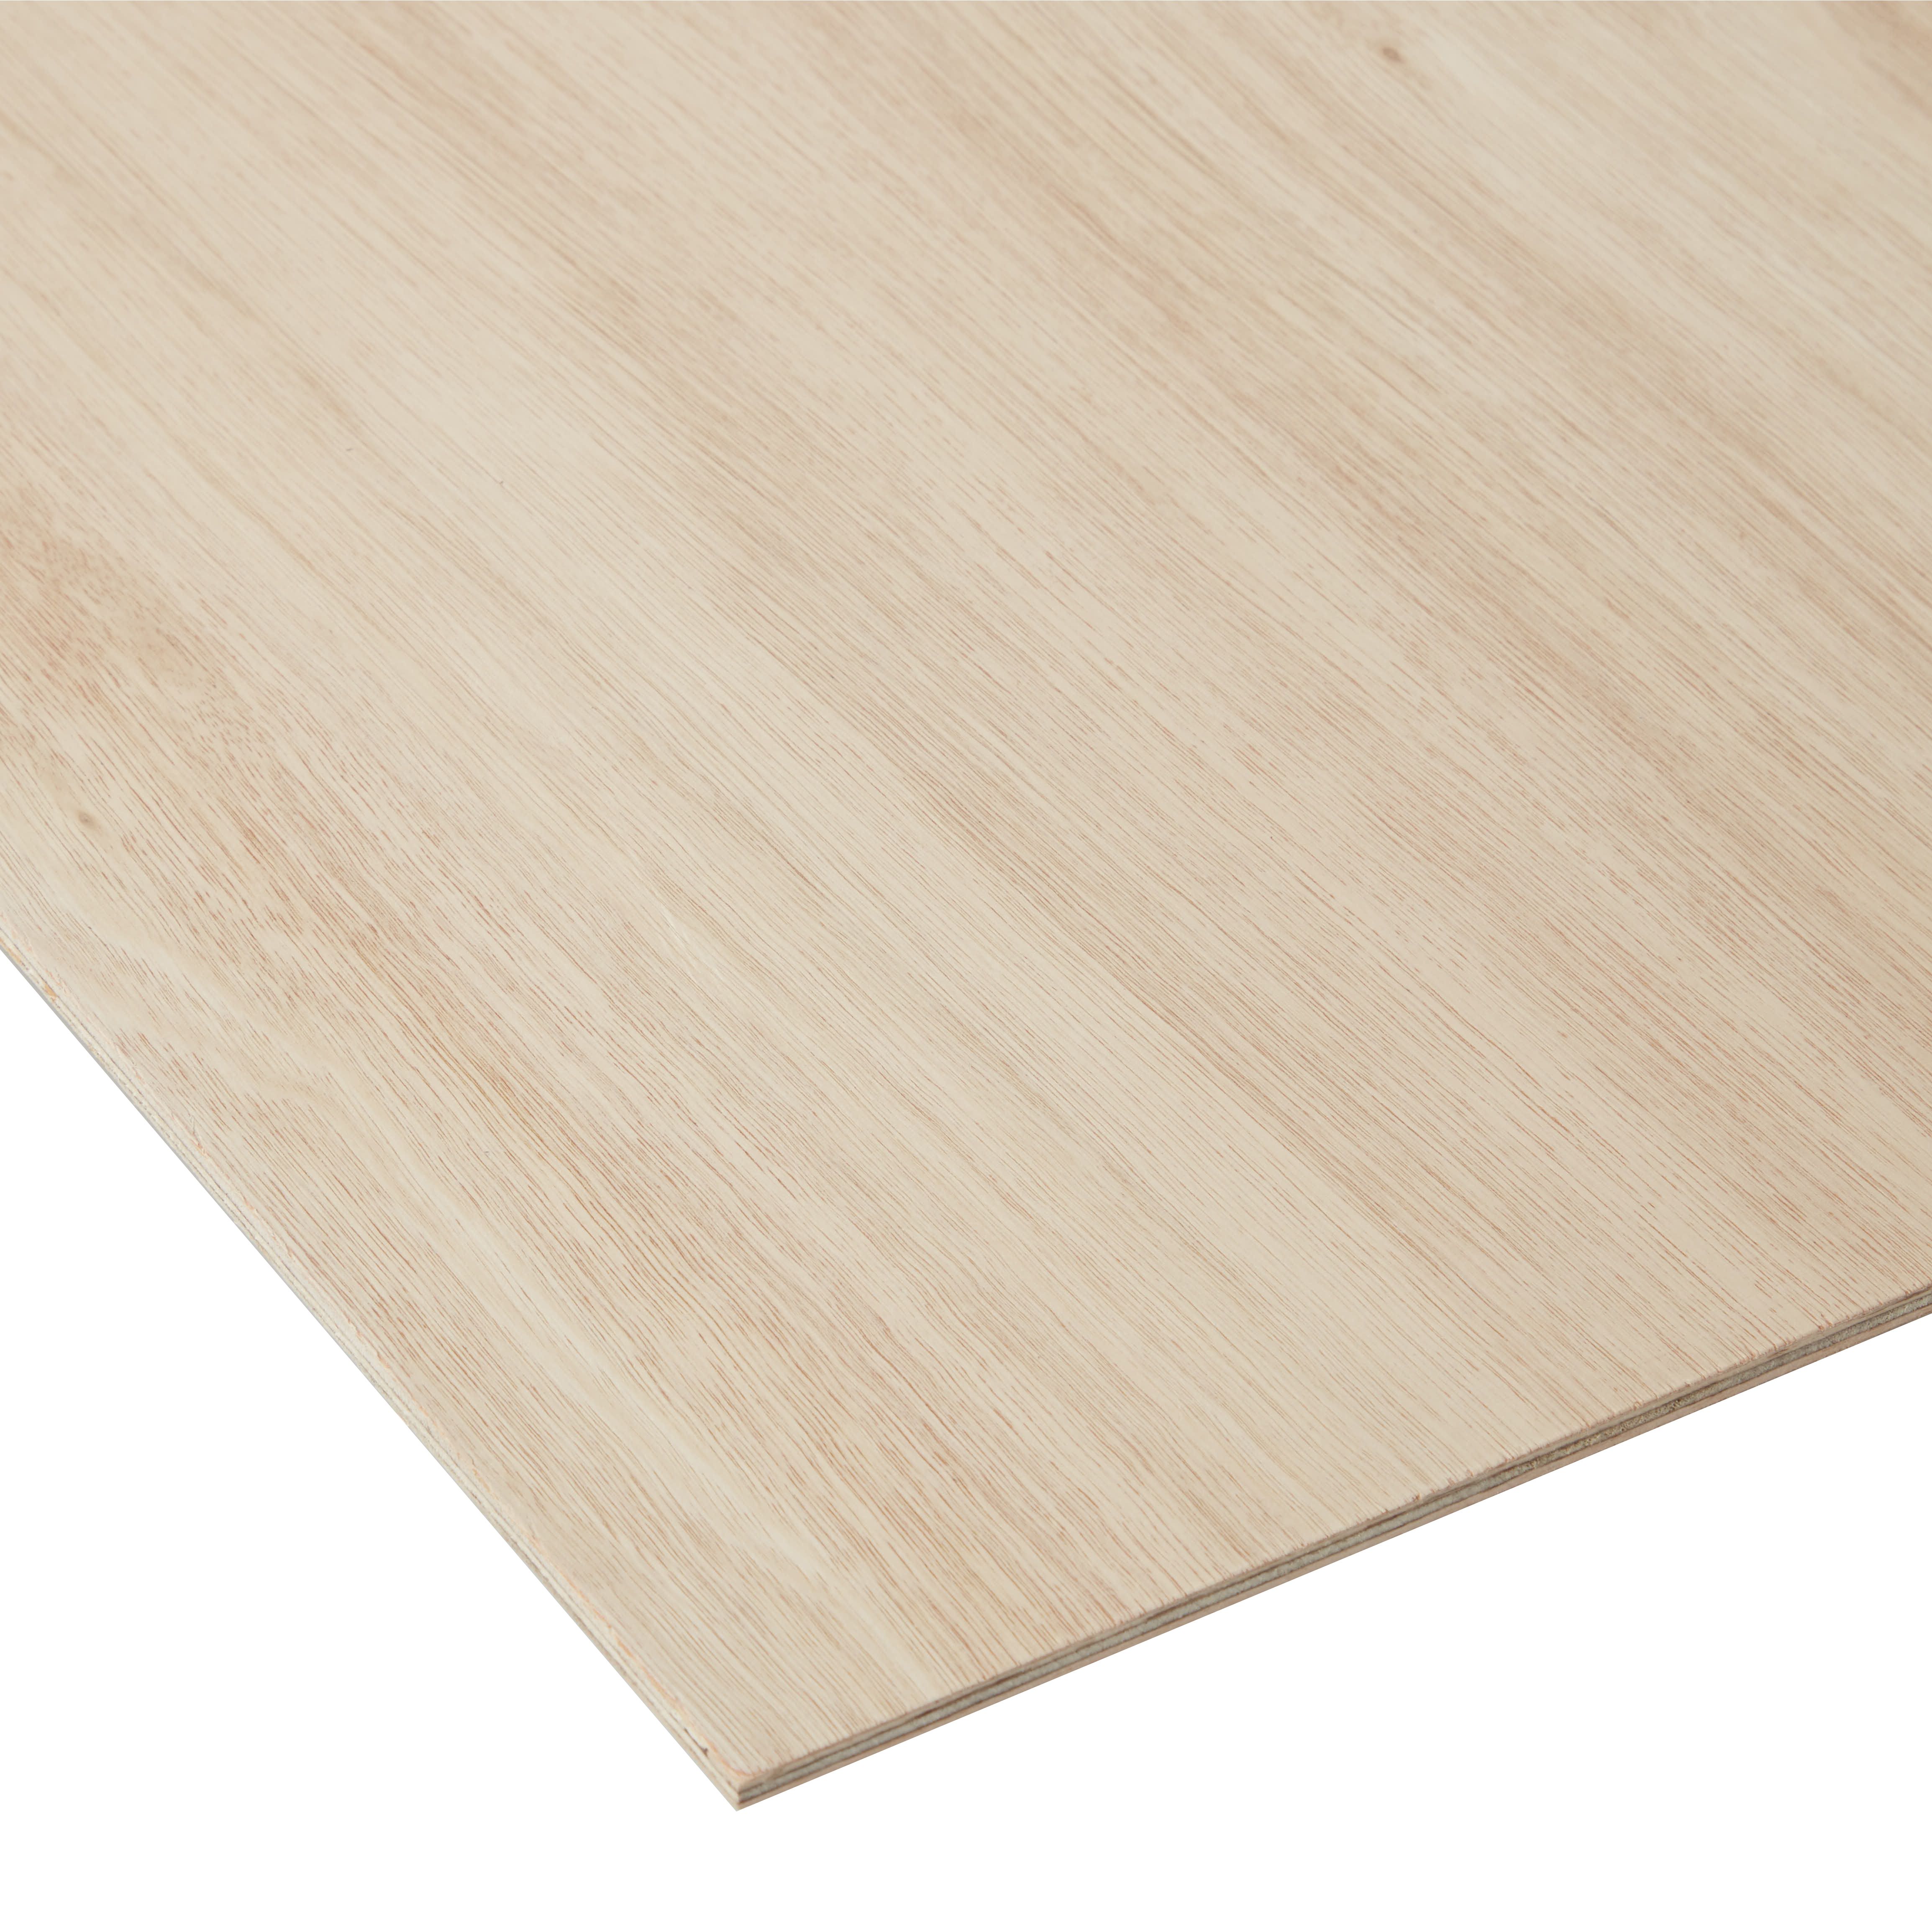 Hardwood Plywood Board (L)2.44m (W)1.22m (T)5mm 7000g